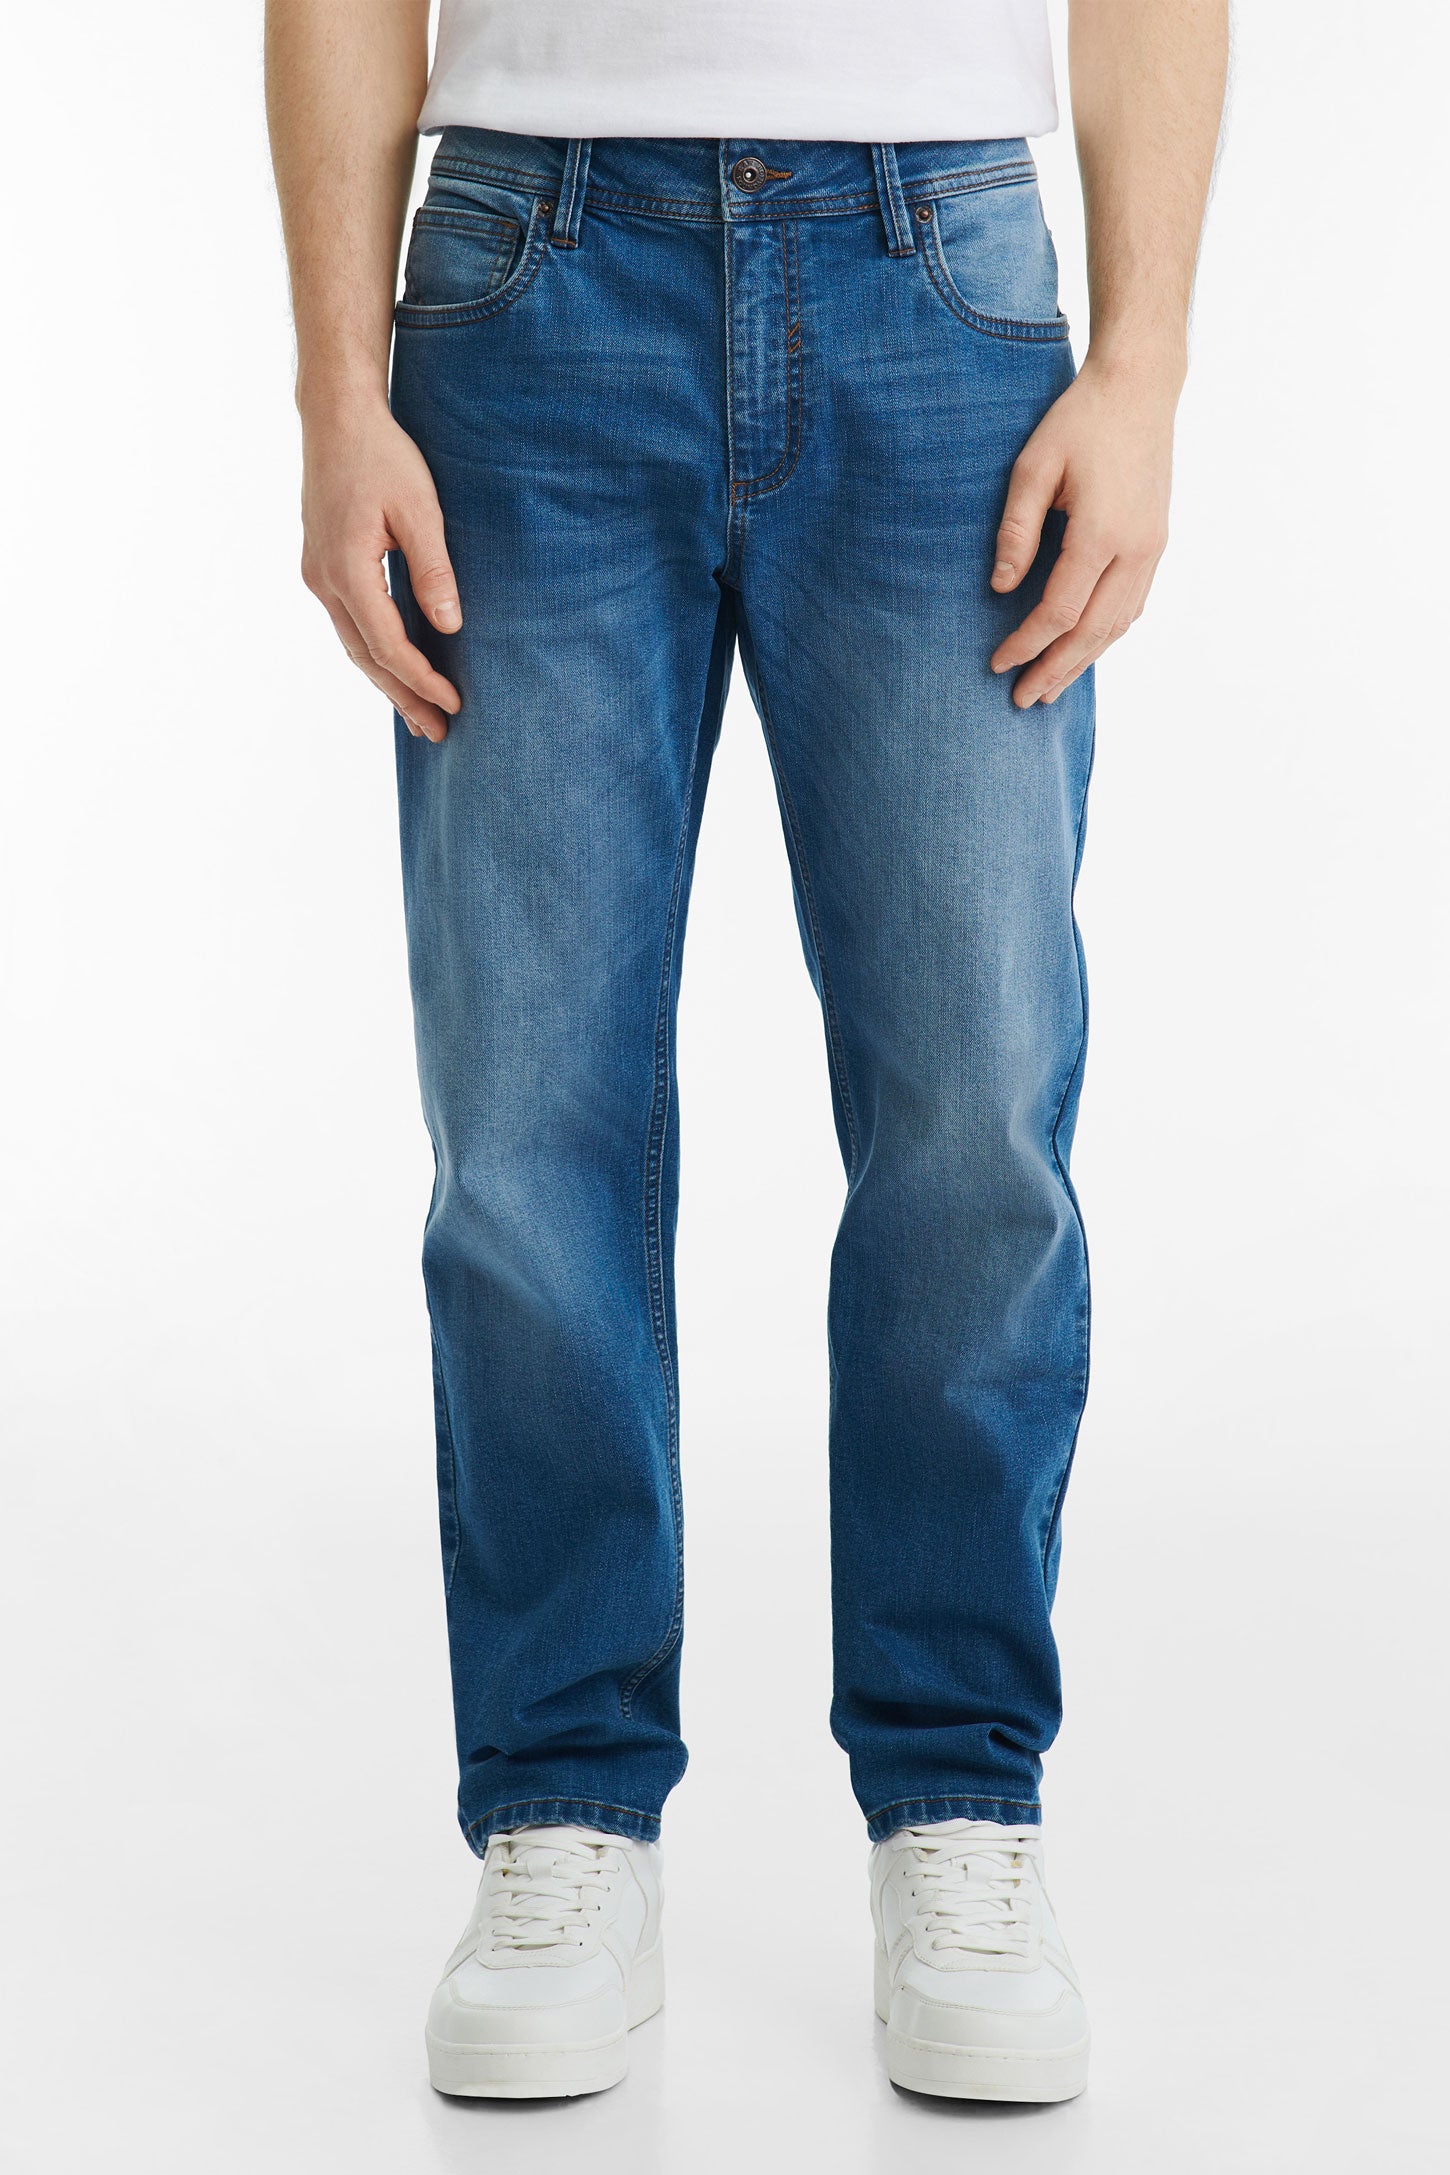 Jeans 5 poches coupe confort 30'' - Homme && INDIGO FONCÉ MOY